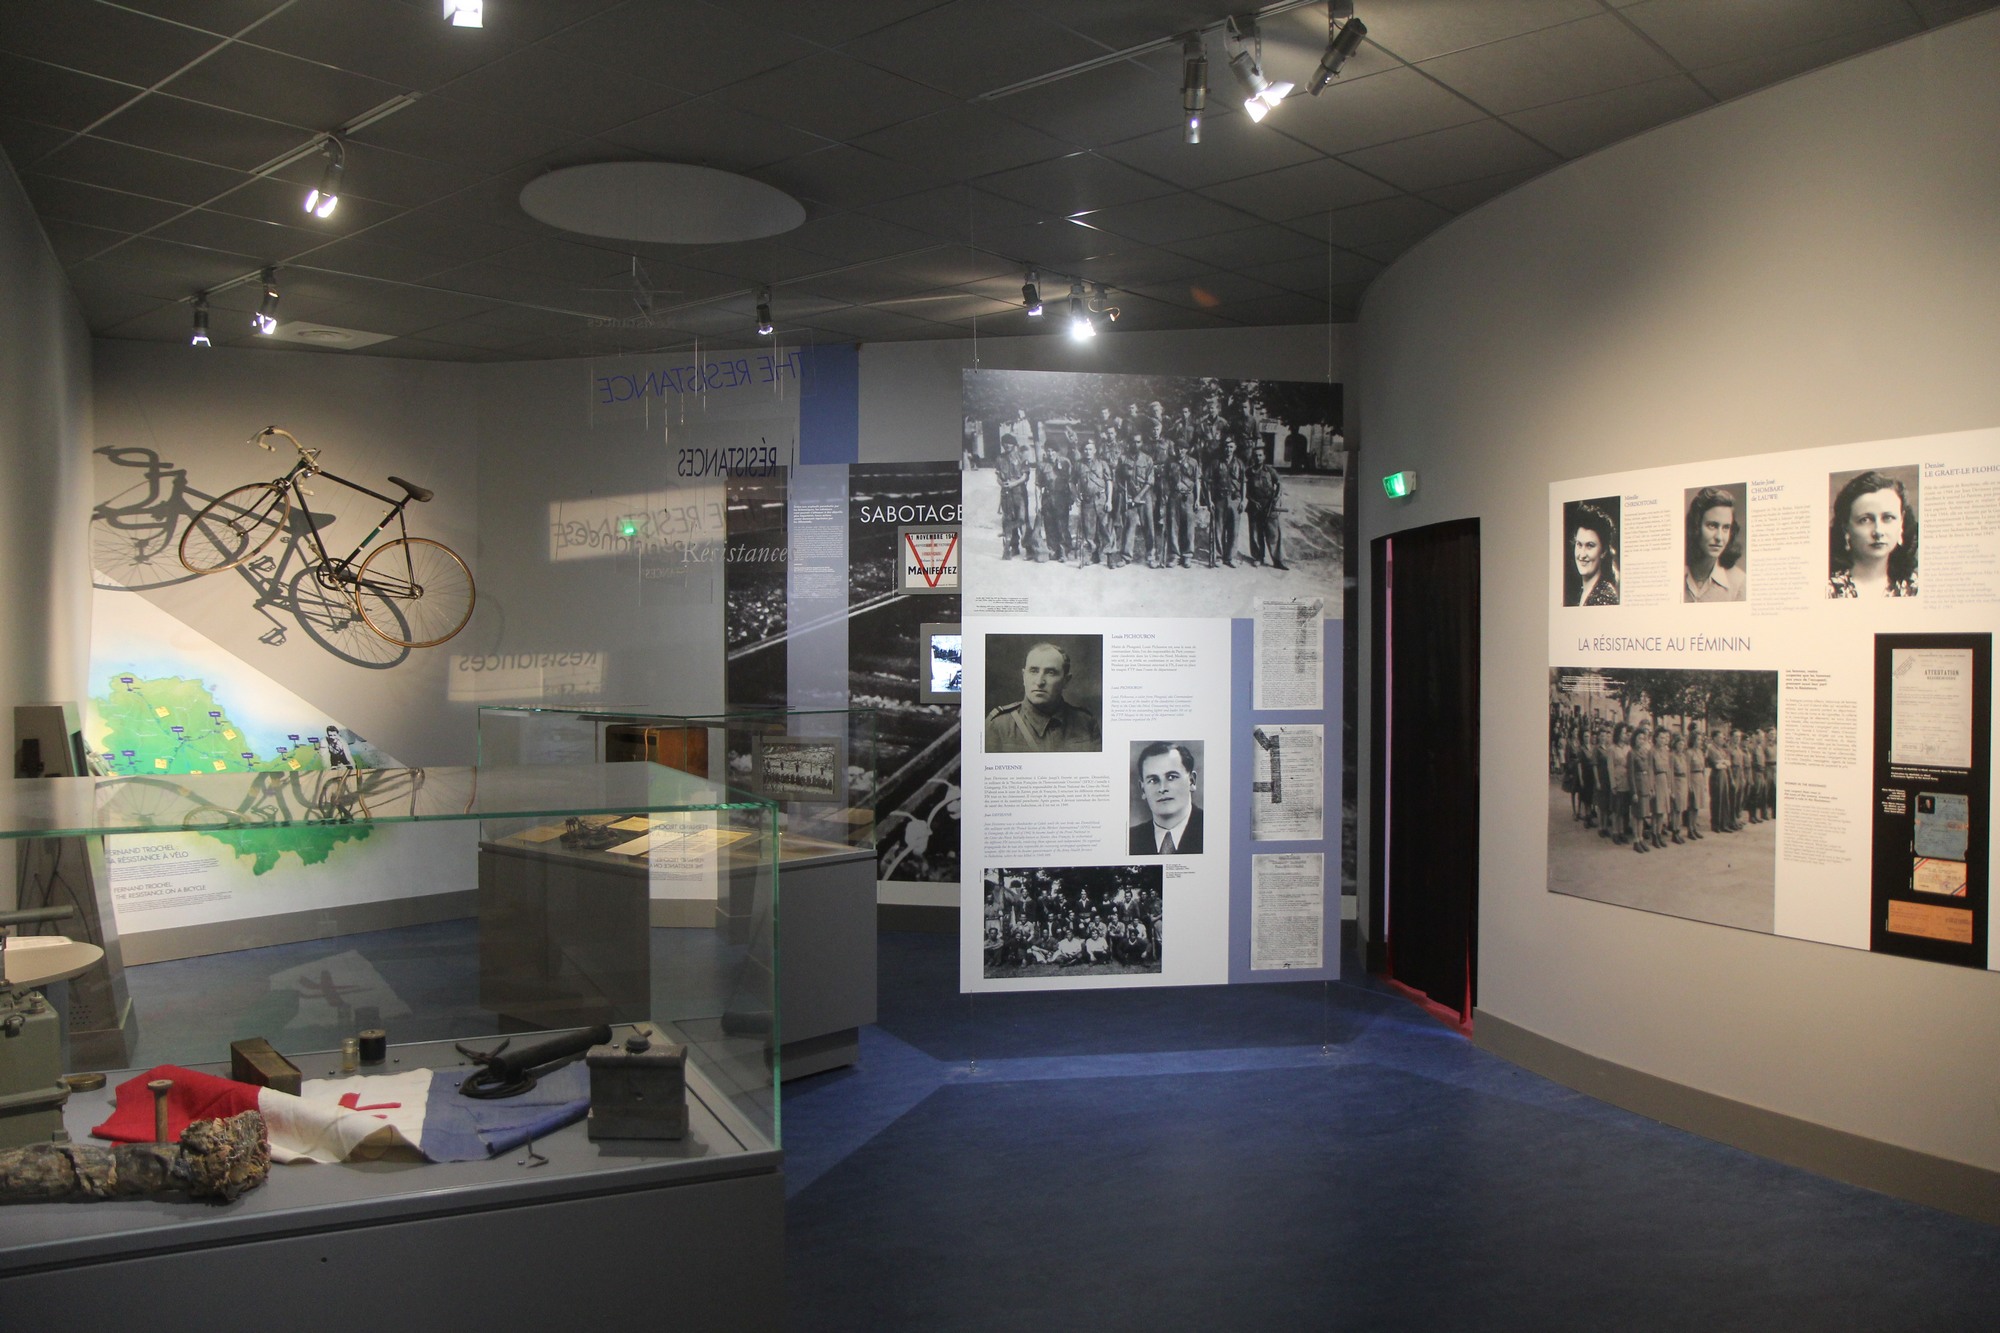 Musée de la Résistance en Argoat